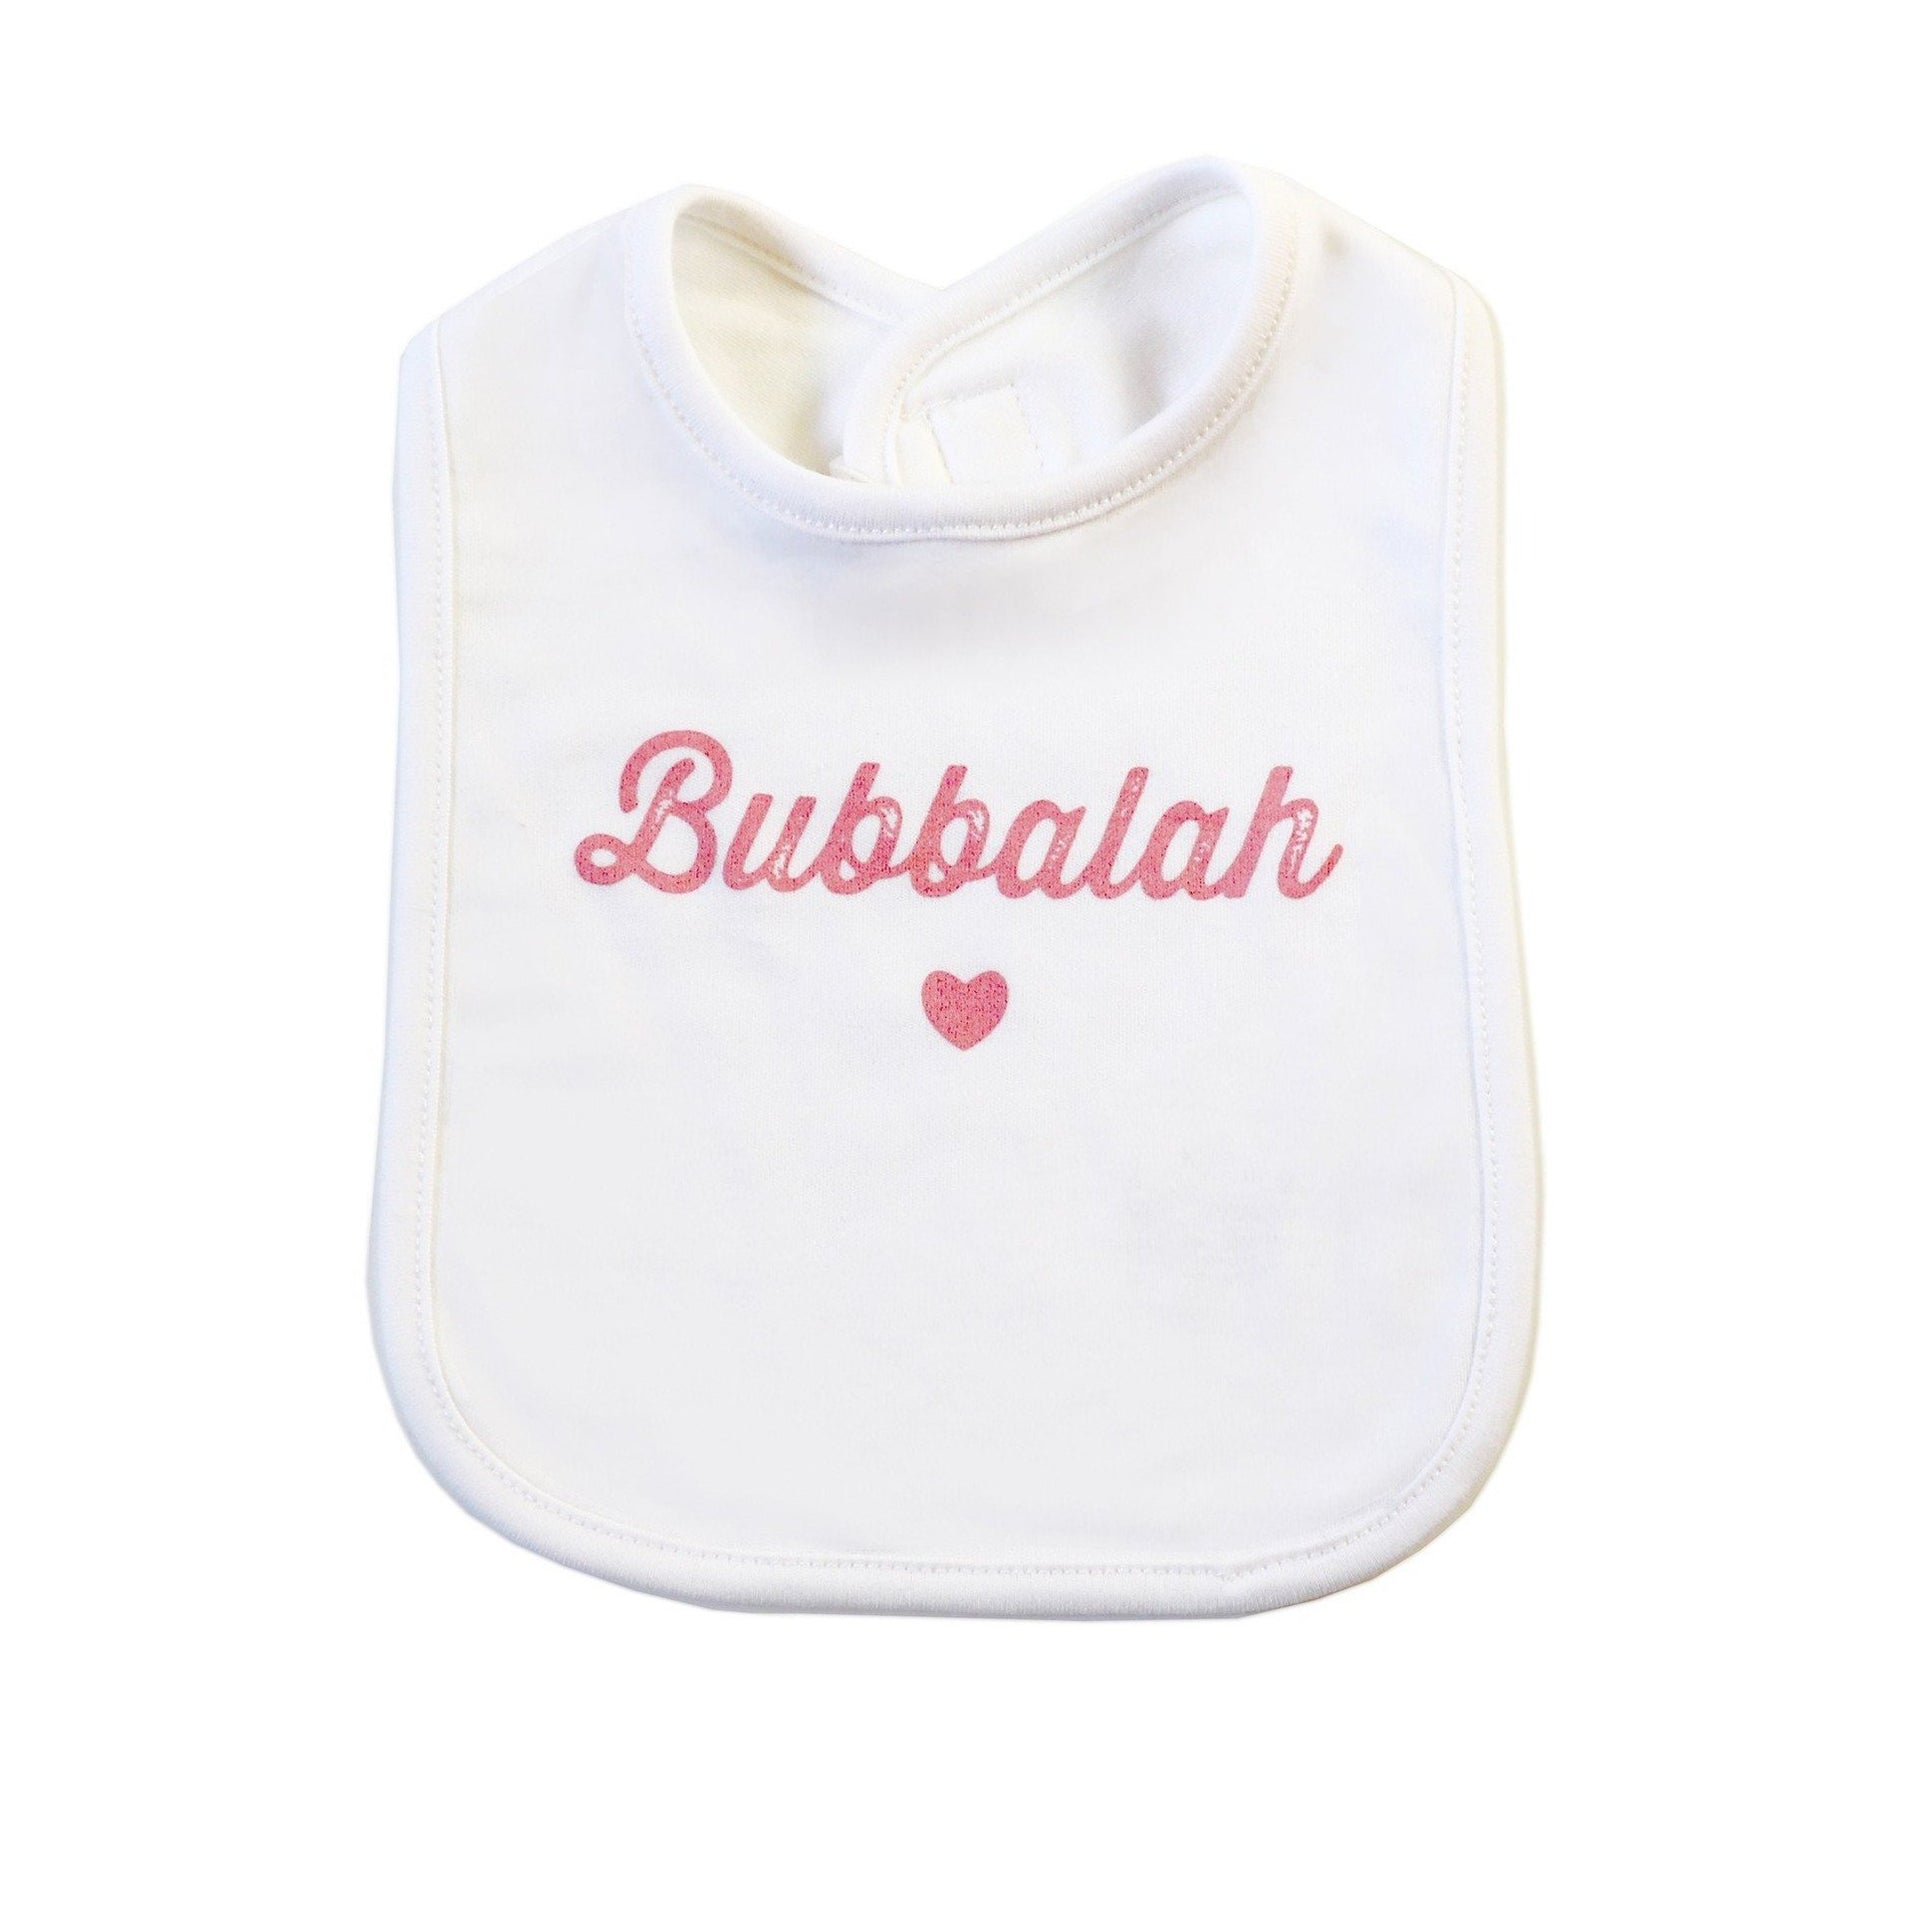 Oy Vey Baby Bib Pink Bubbalah White and Pink Baby Bib